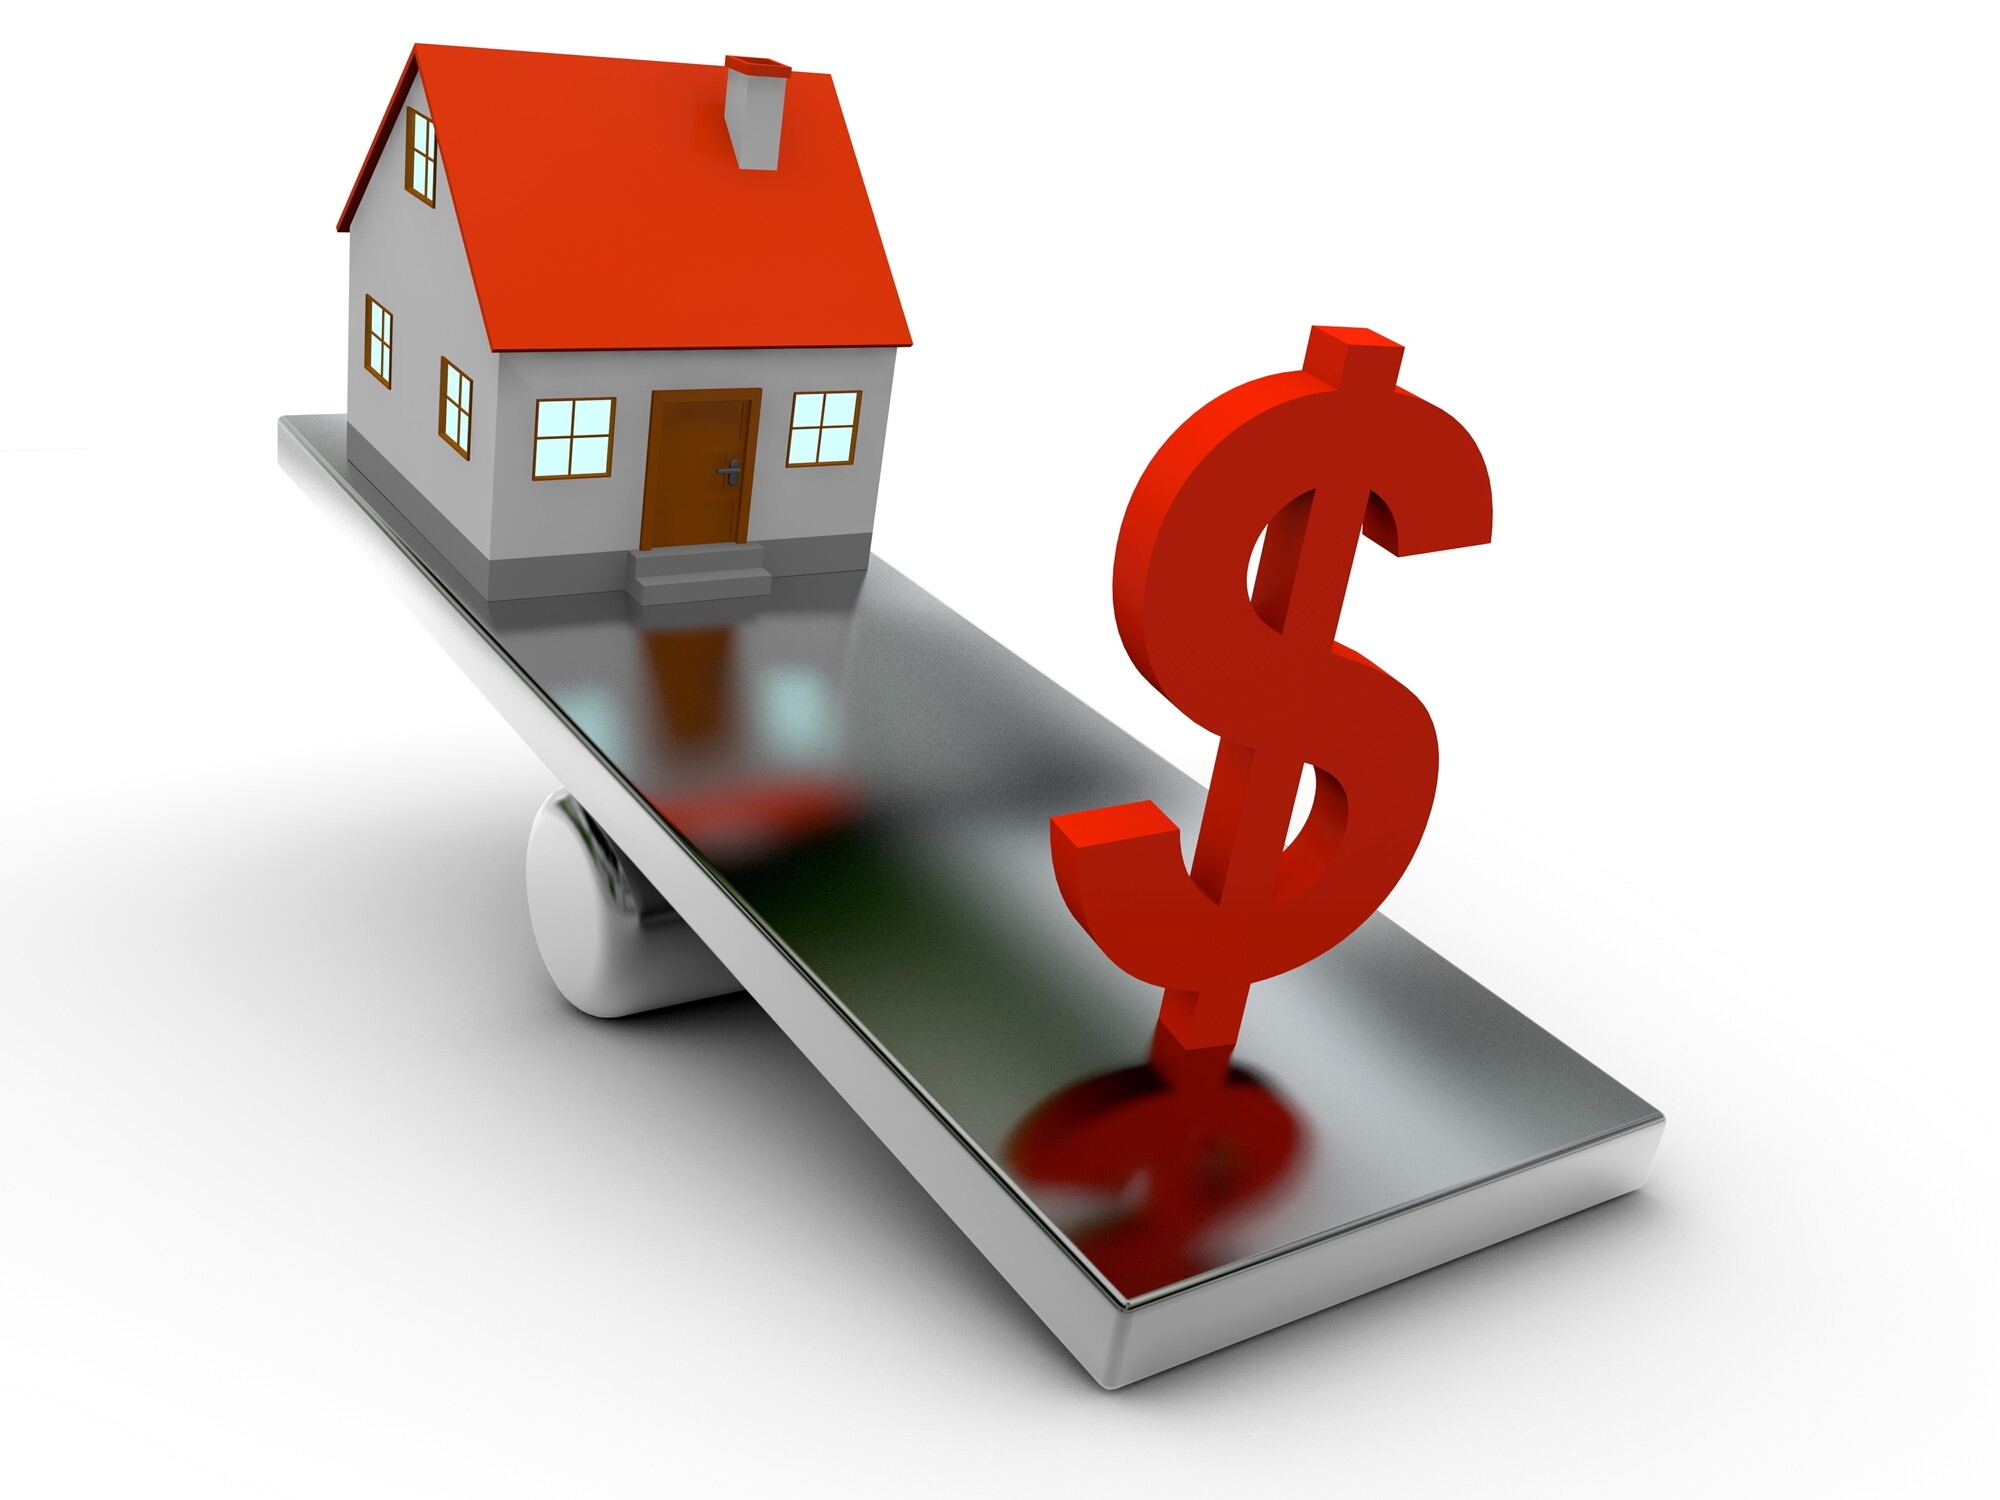 Задаток или аванс при покупке недвижимости - какой вариант выгоднее?